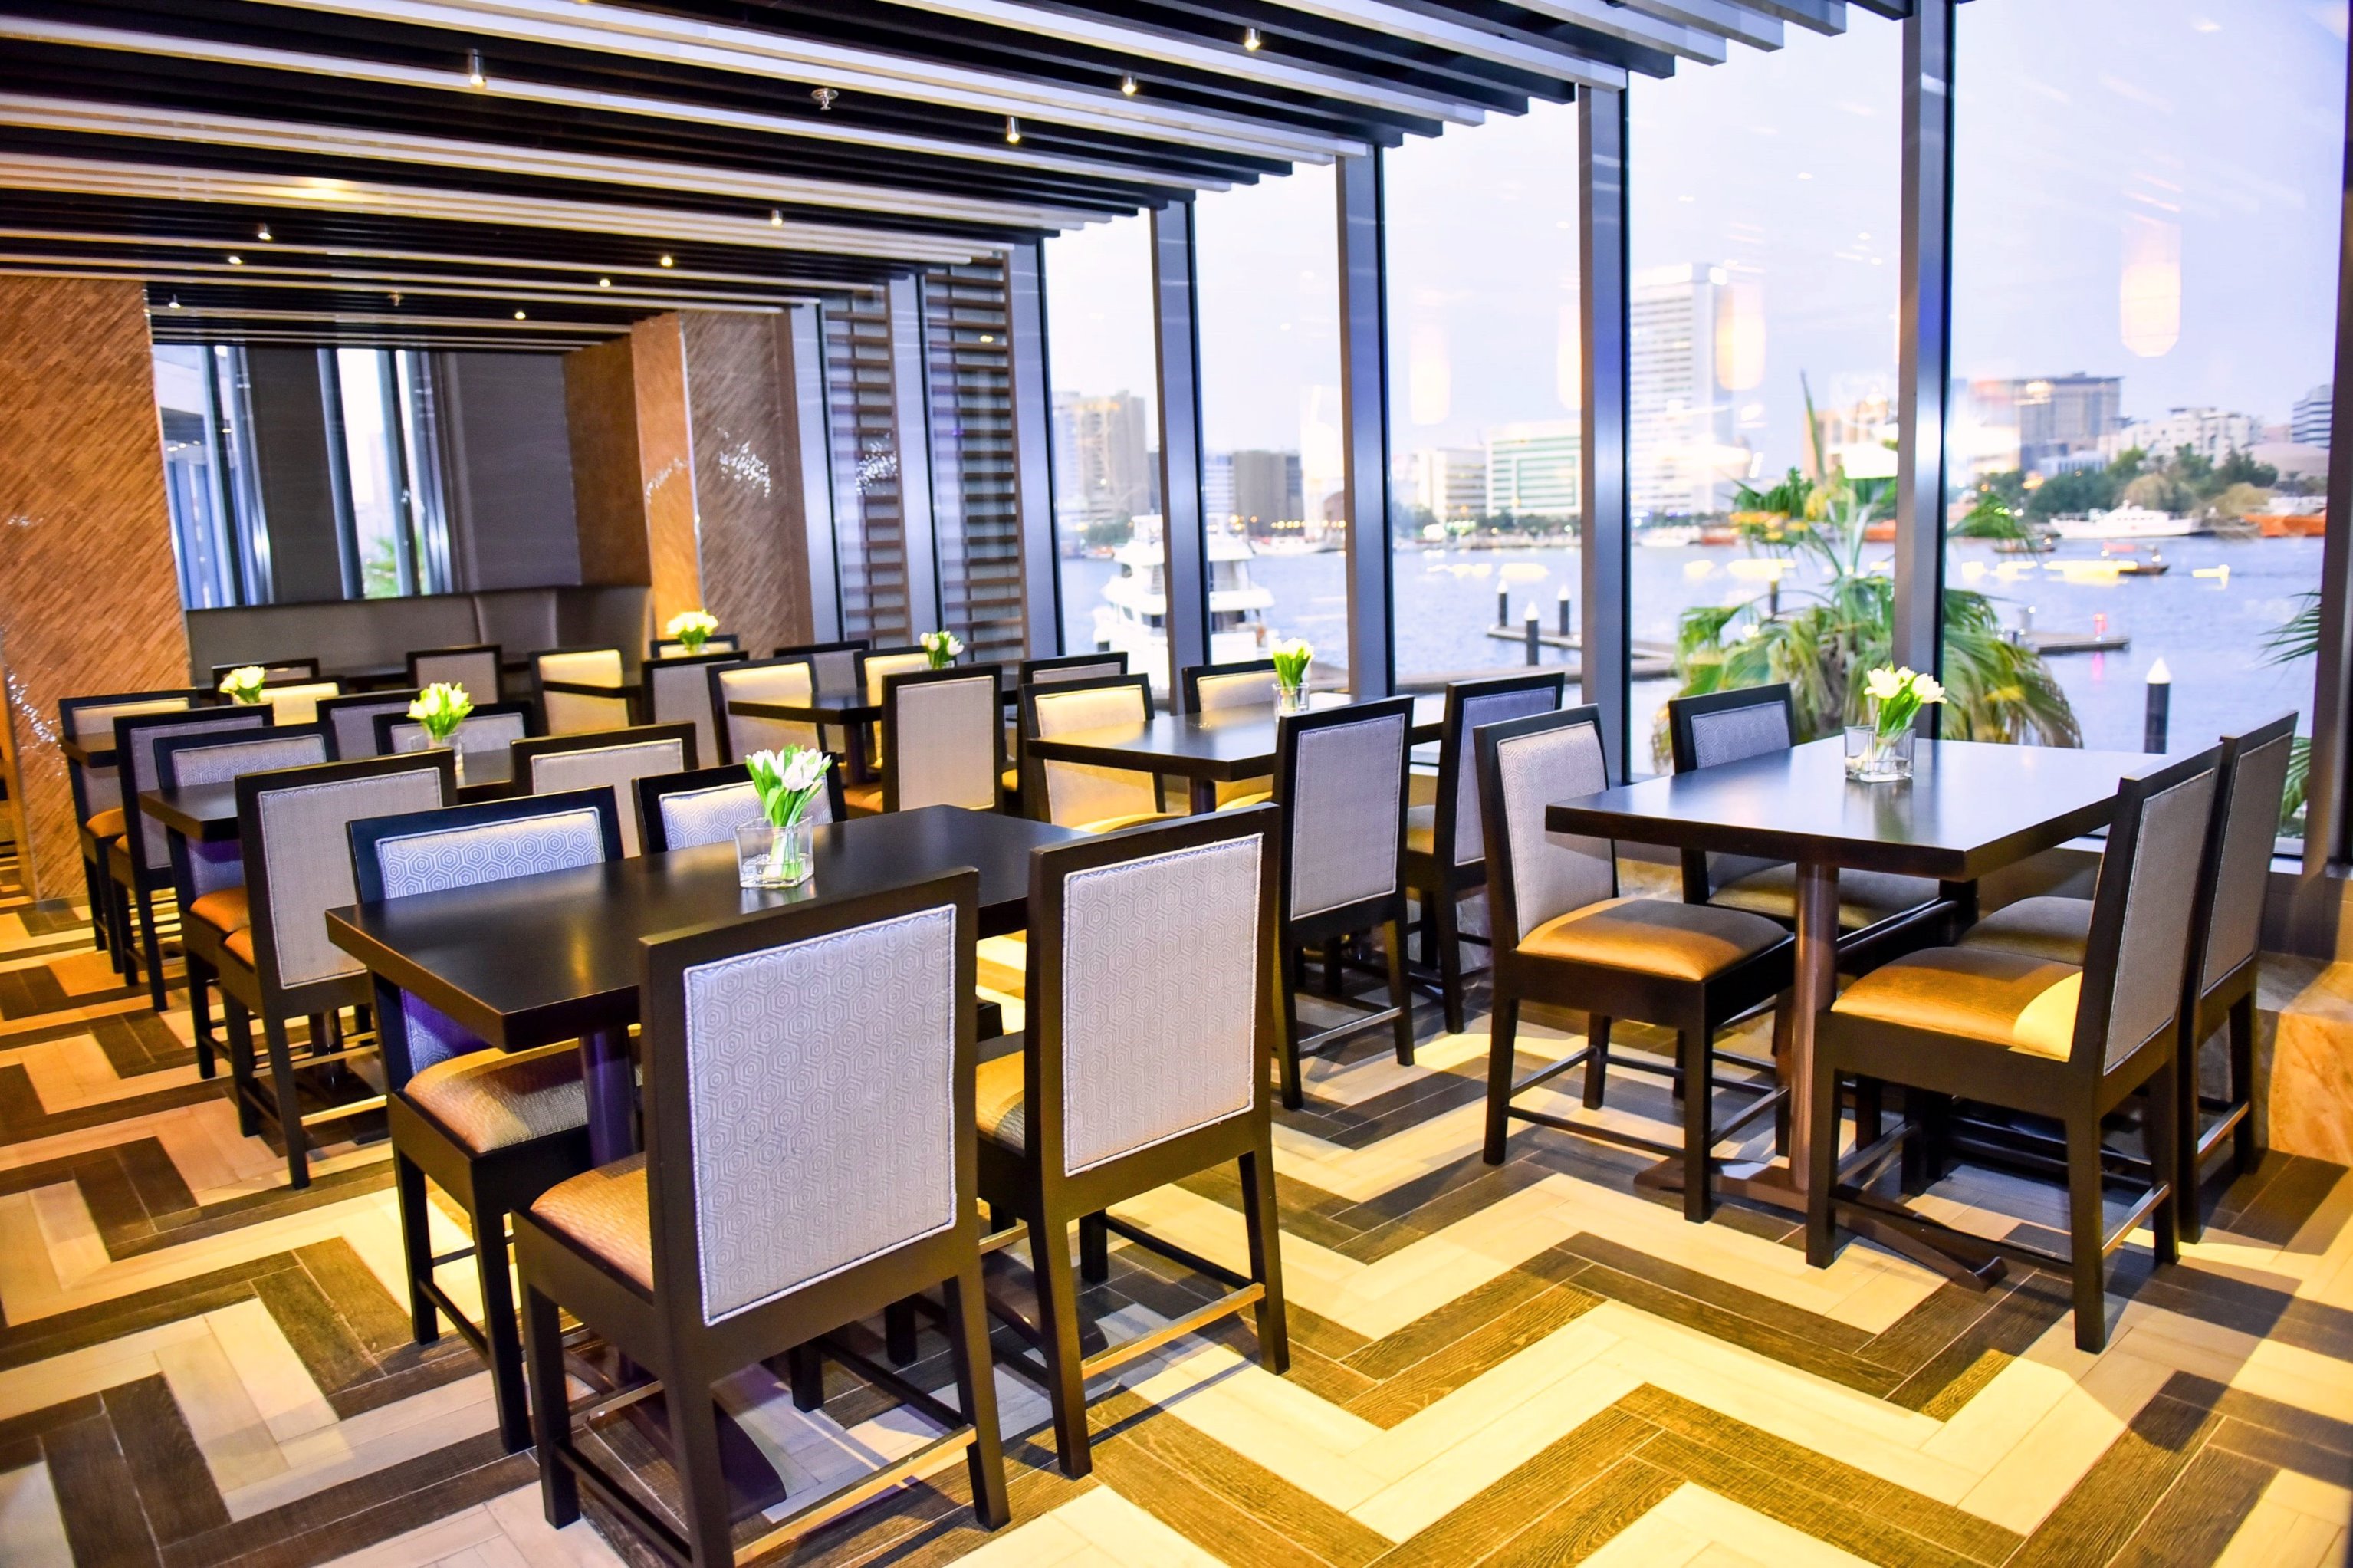 مطعم كونا غريل يستعد لإفتتاح أبوابه في دبي